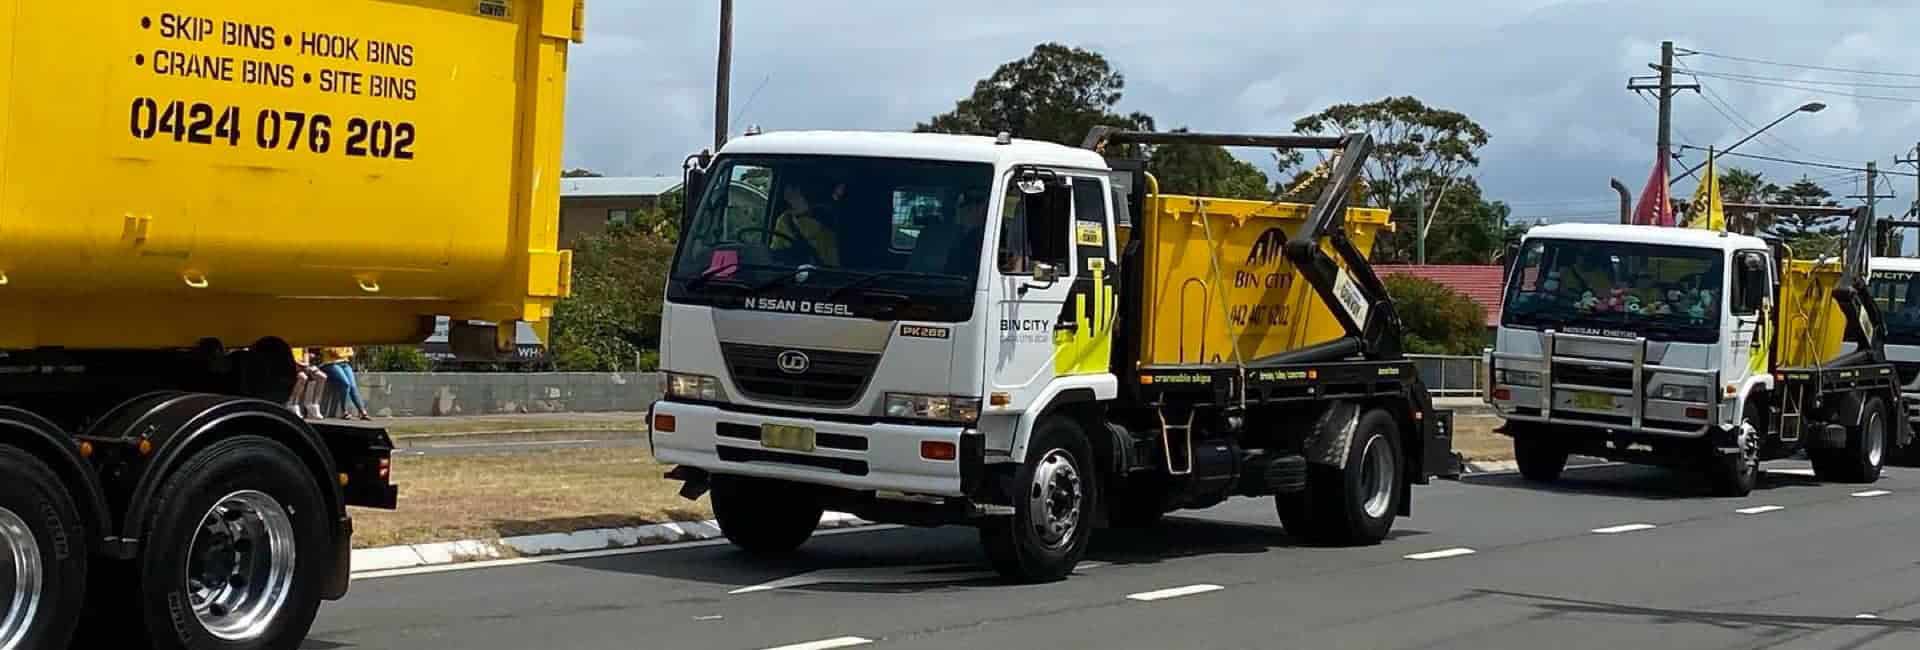 Bin City Trucks — Skip Bin Hire in Wollongong, NSW